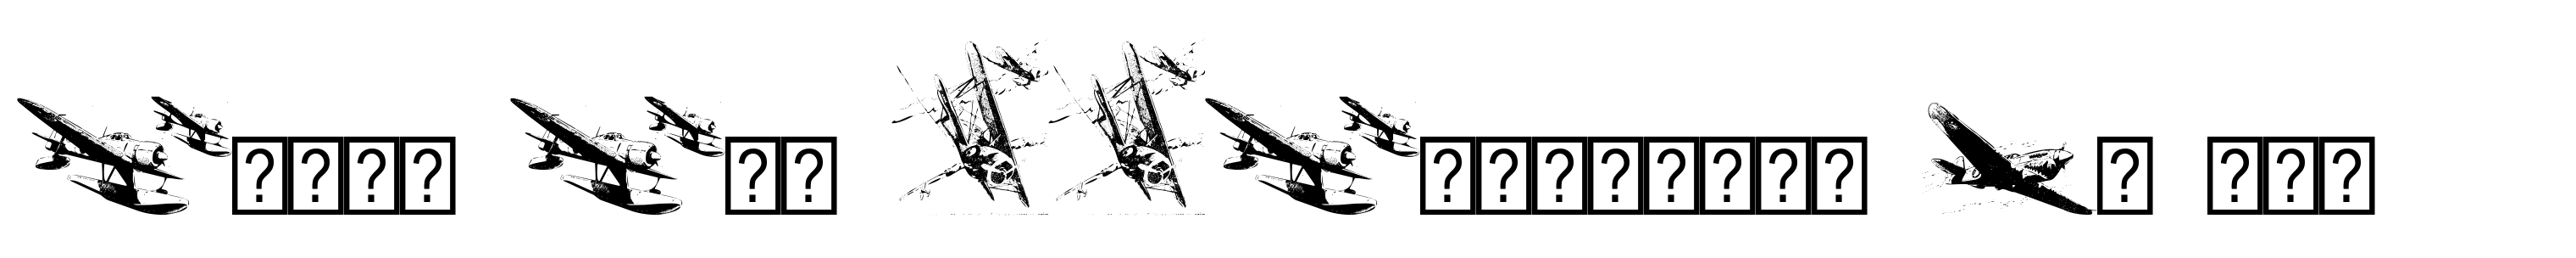 World War IIWarplanes De Luxe